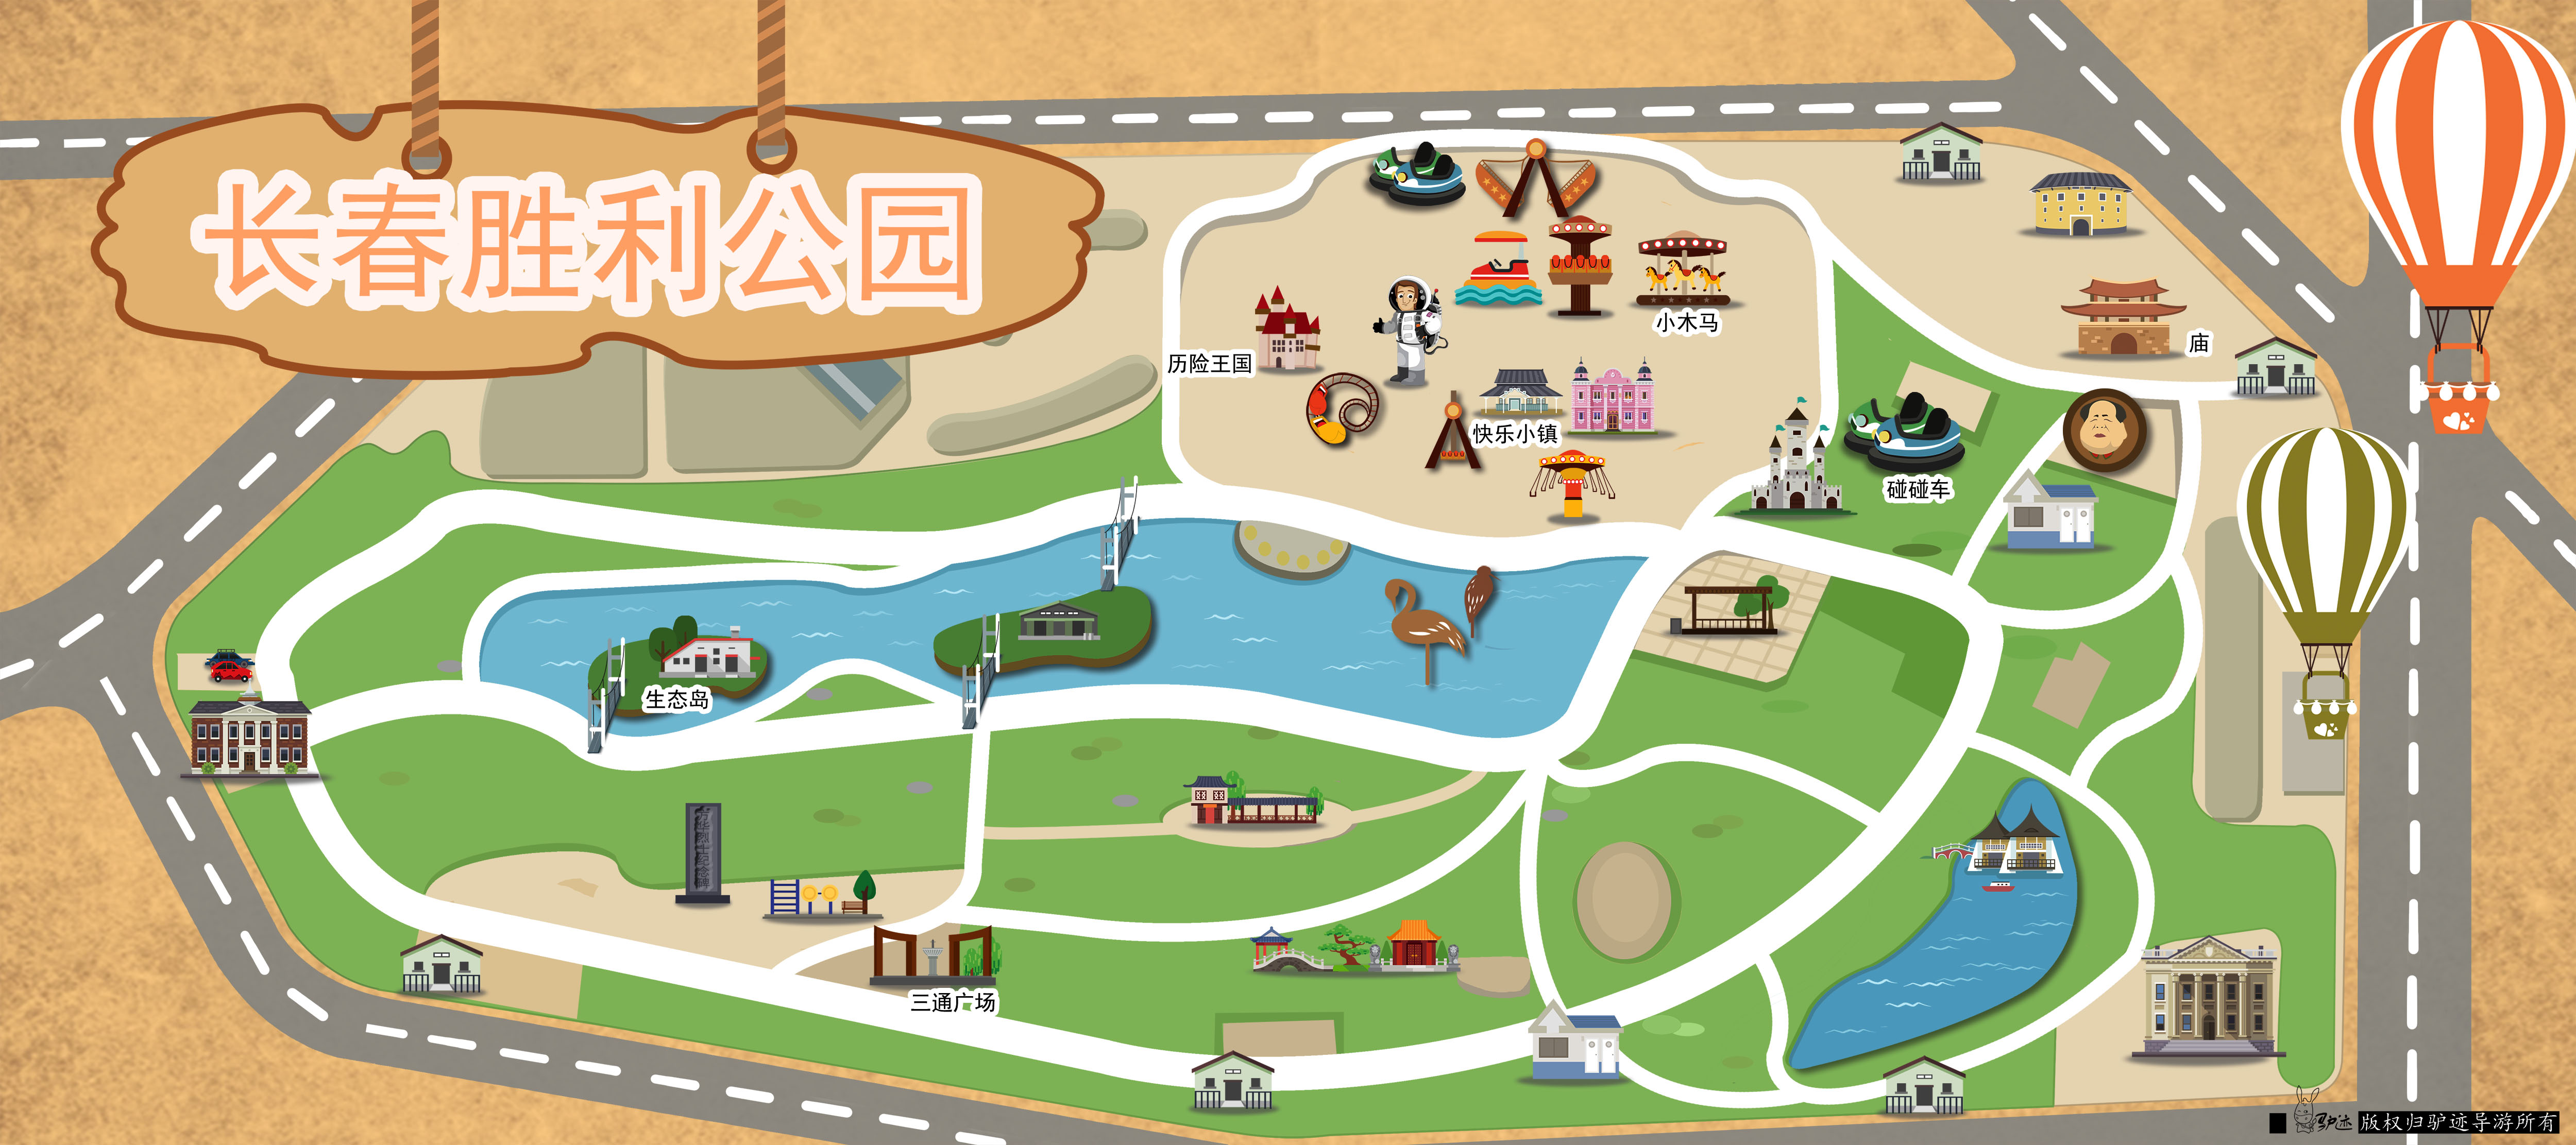 2019北京世园会高清园区导览图来了- 北京本地宝